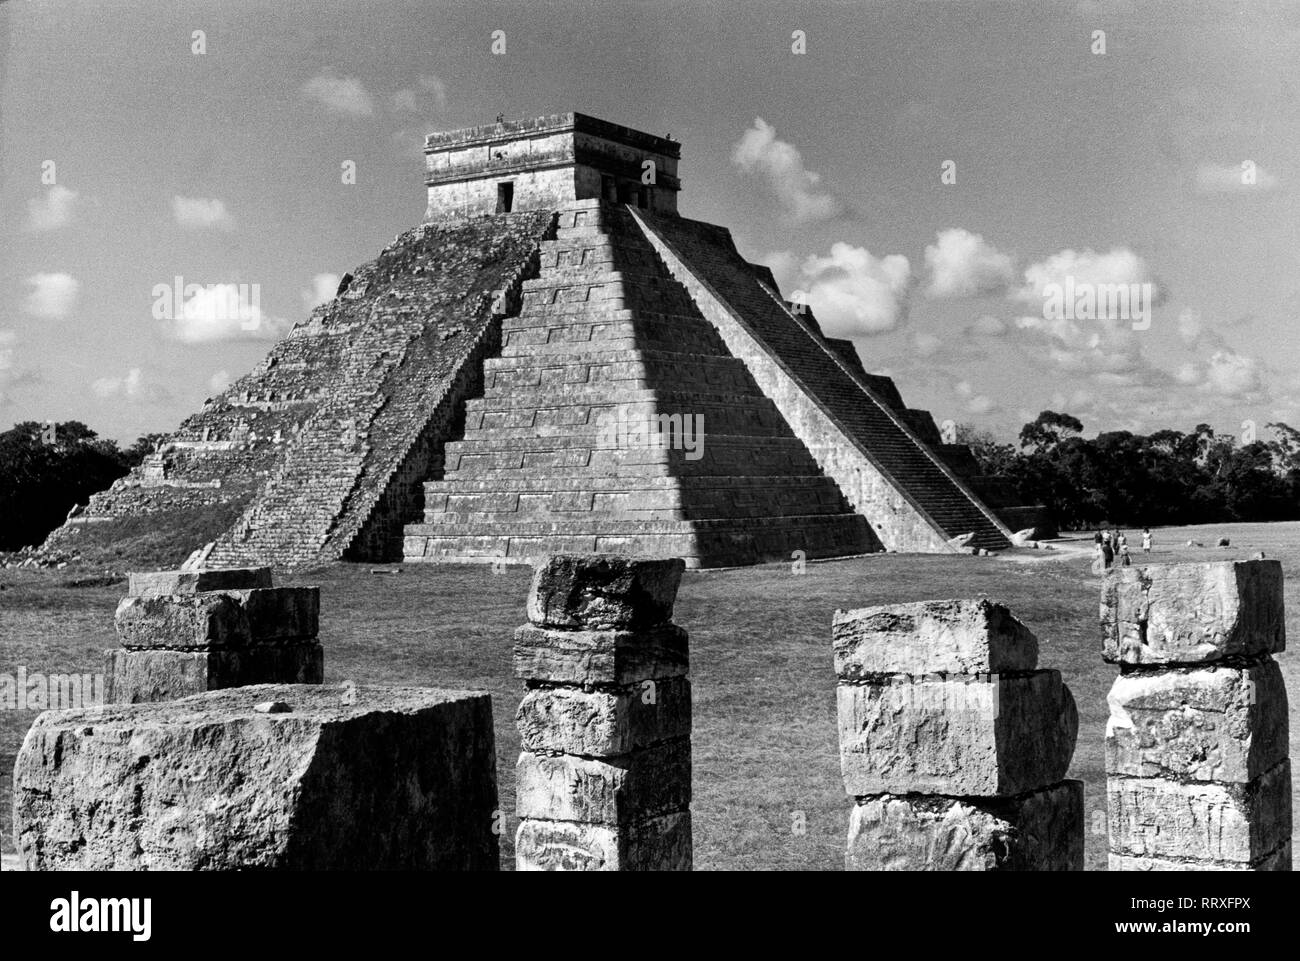 Viaggio in Messico - Messico, Yucatan - El Castillo - il passo piramide Castillo tempio di Chichen Itza, civiltà Maya. Data dell'immagine 1962 circa. Foto Erich Andres Foto Stock